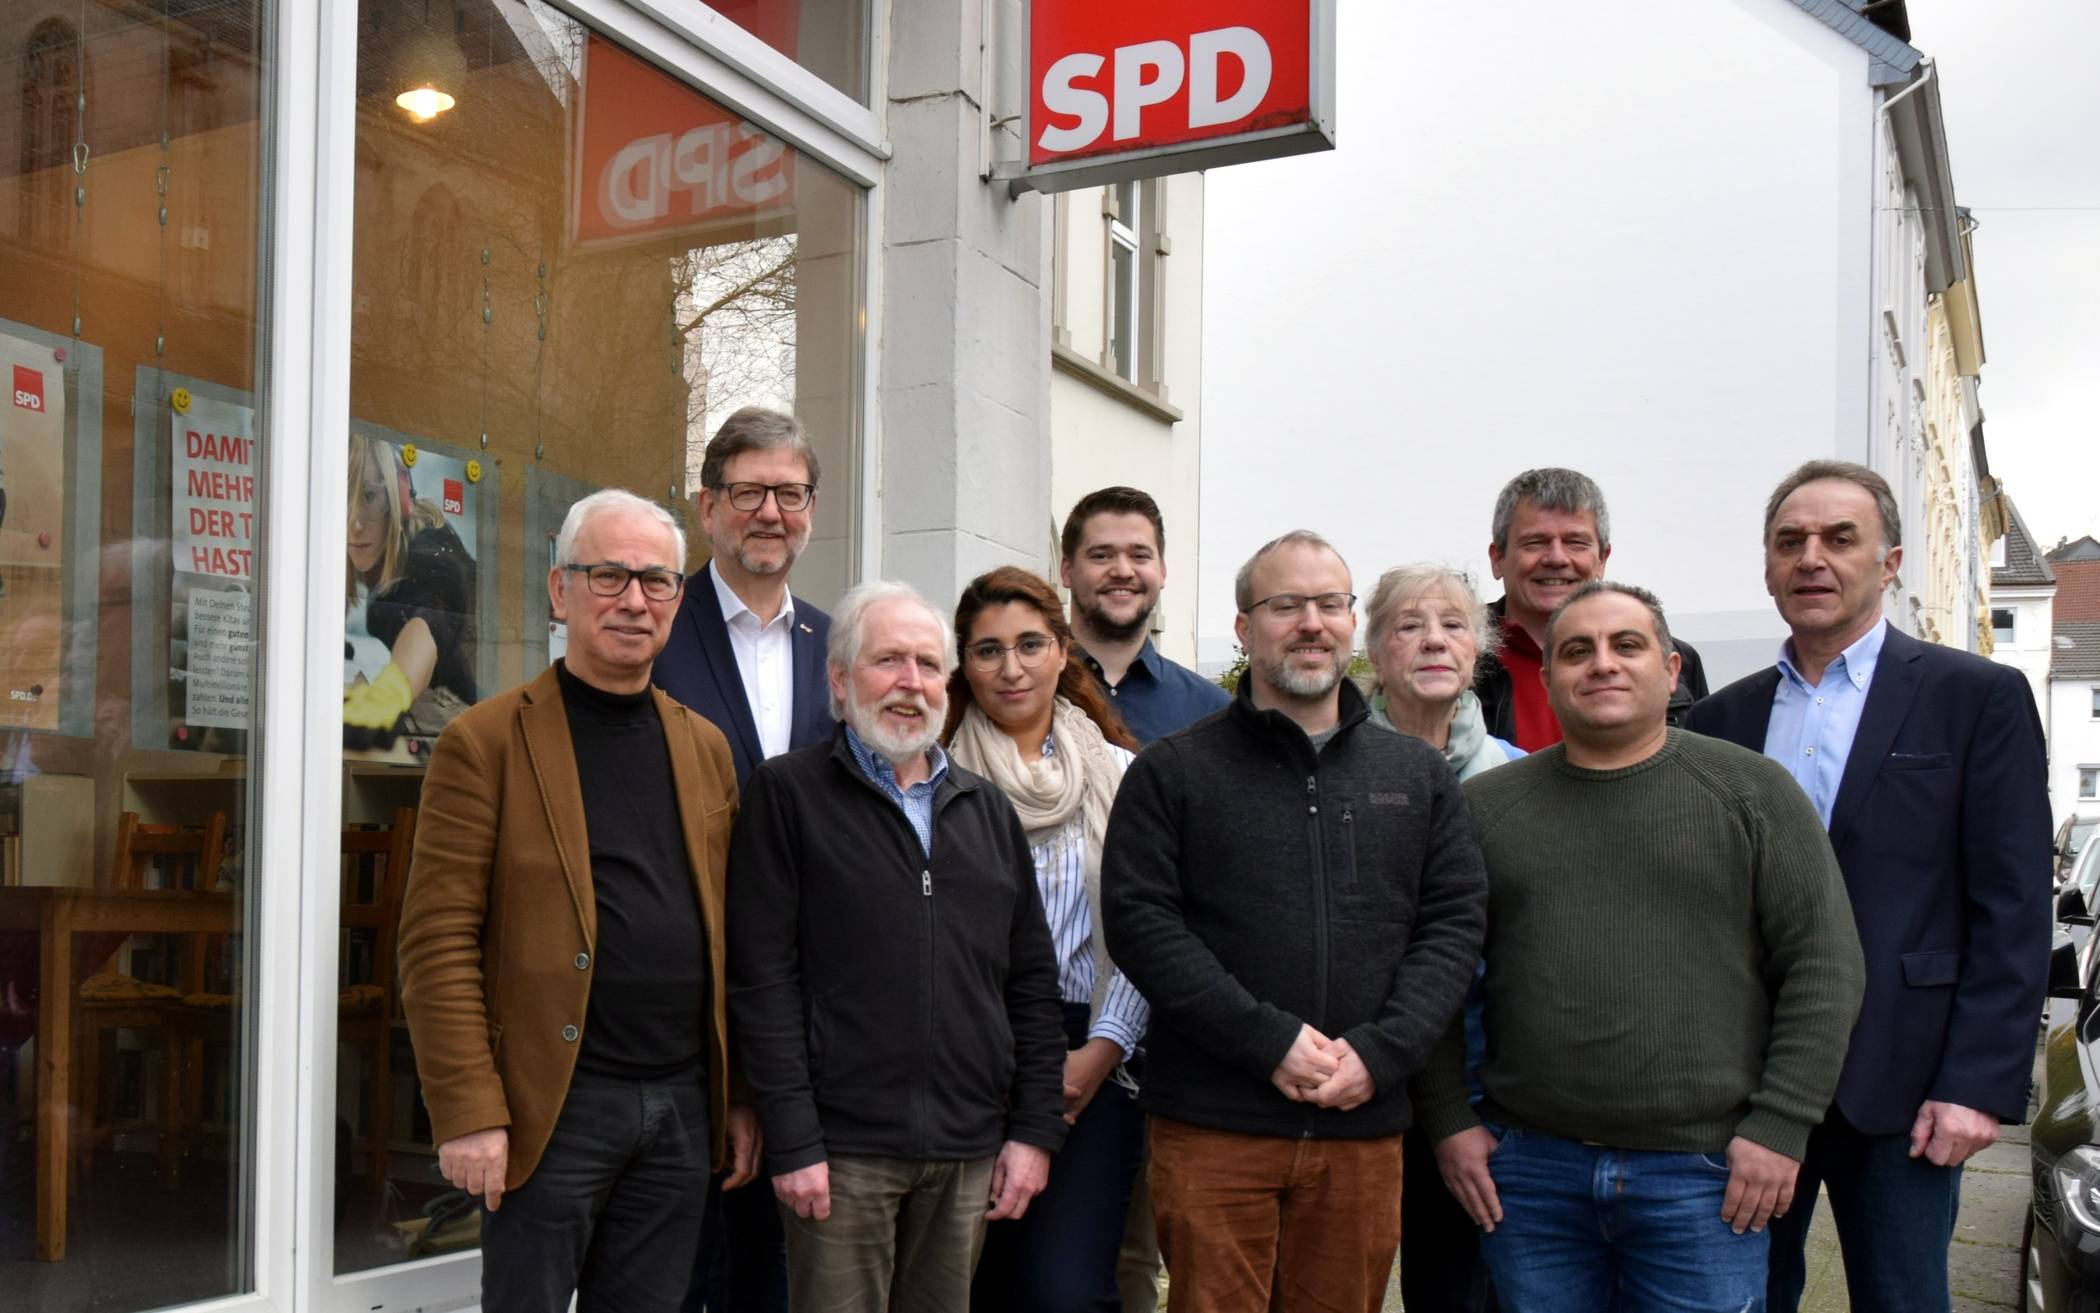  Die Kandidaten zur Wahl der Bezirksvertretung der SPD Vohwinkel im September 2020.  